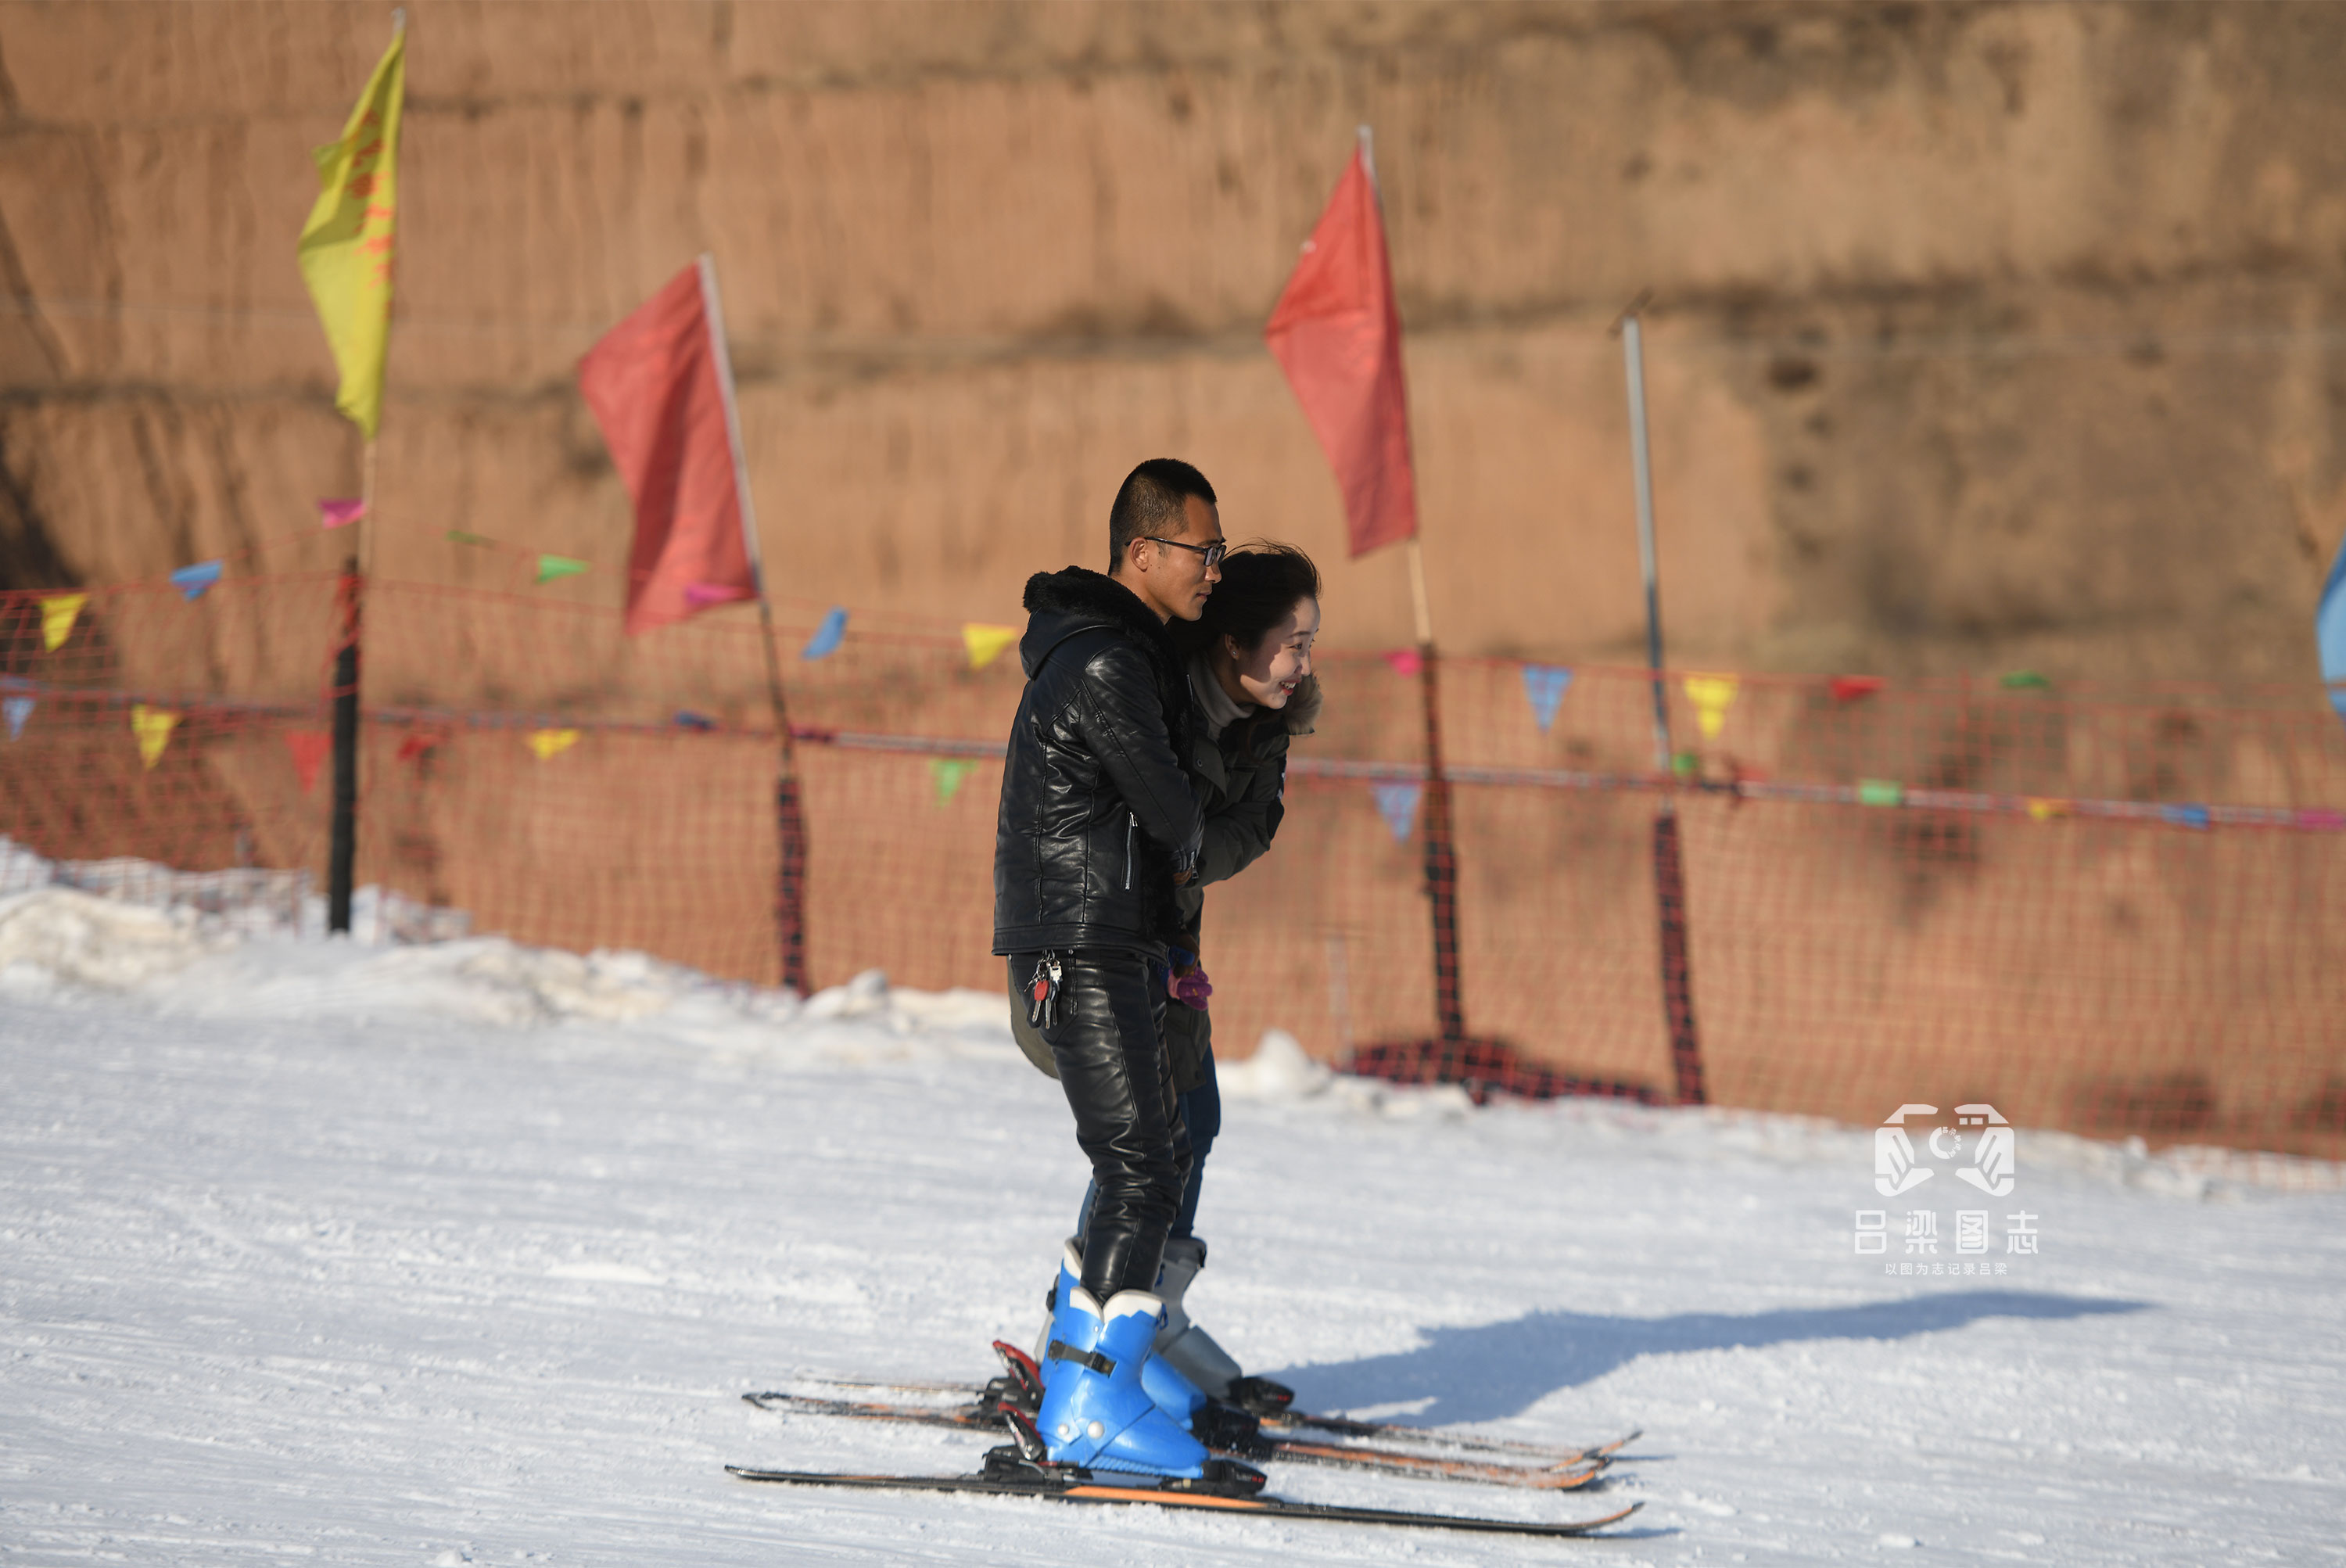 吕梁悦隆滑雪场图片